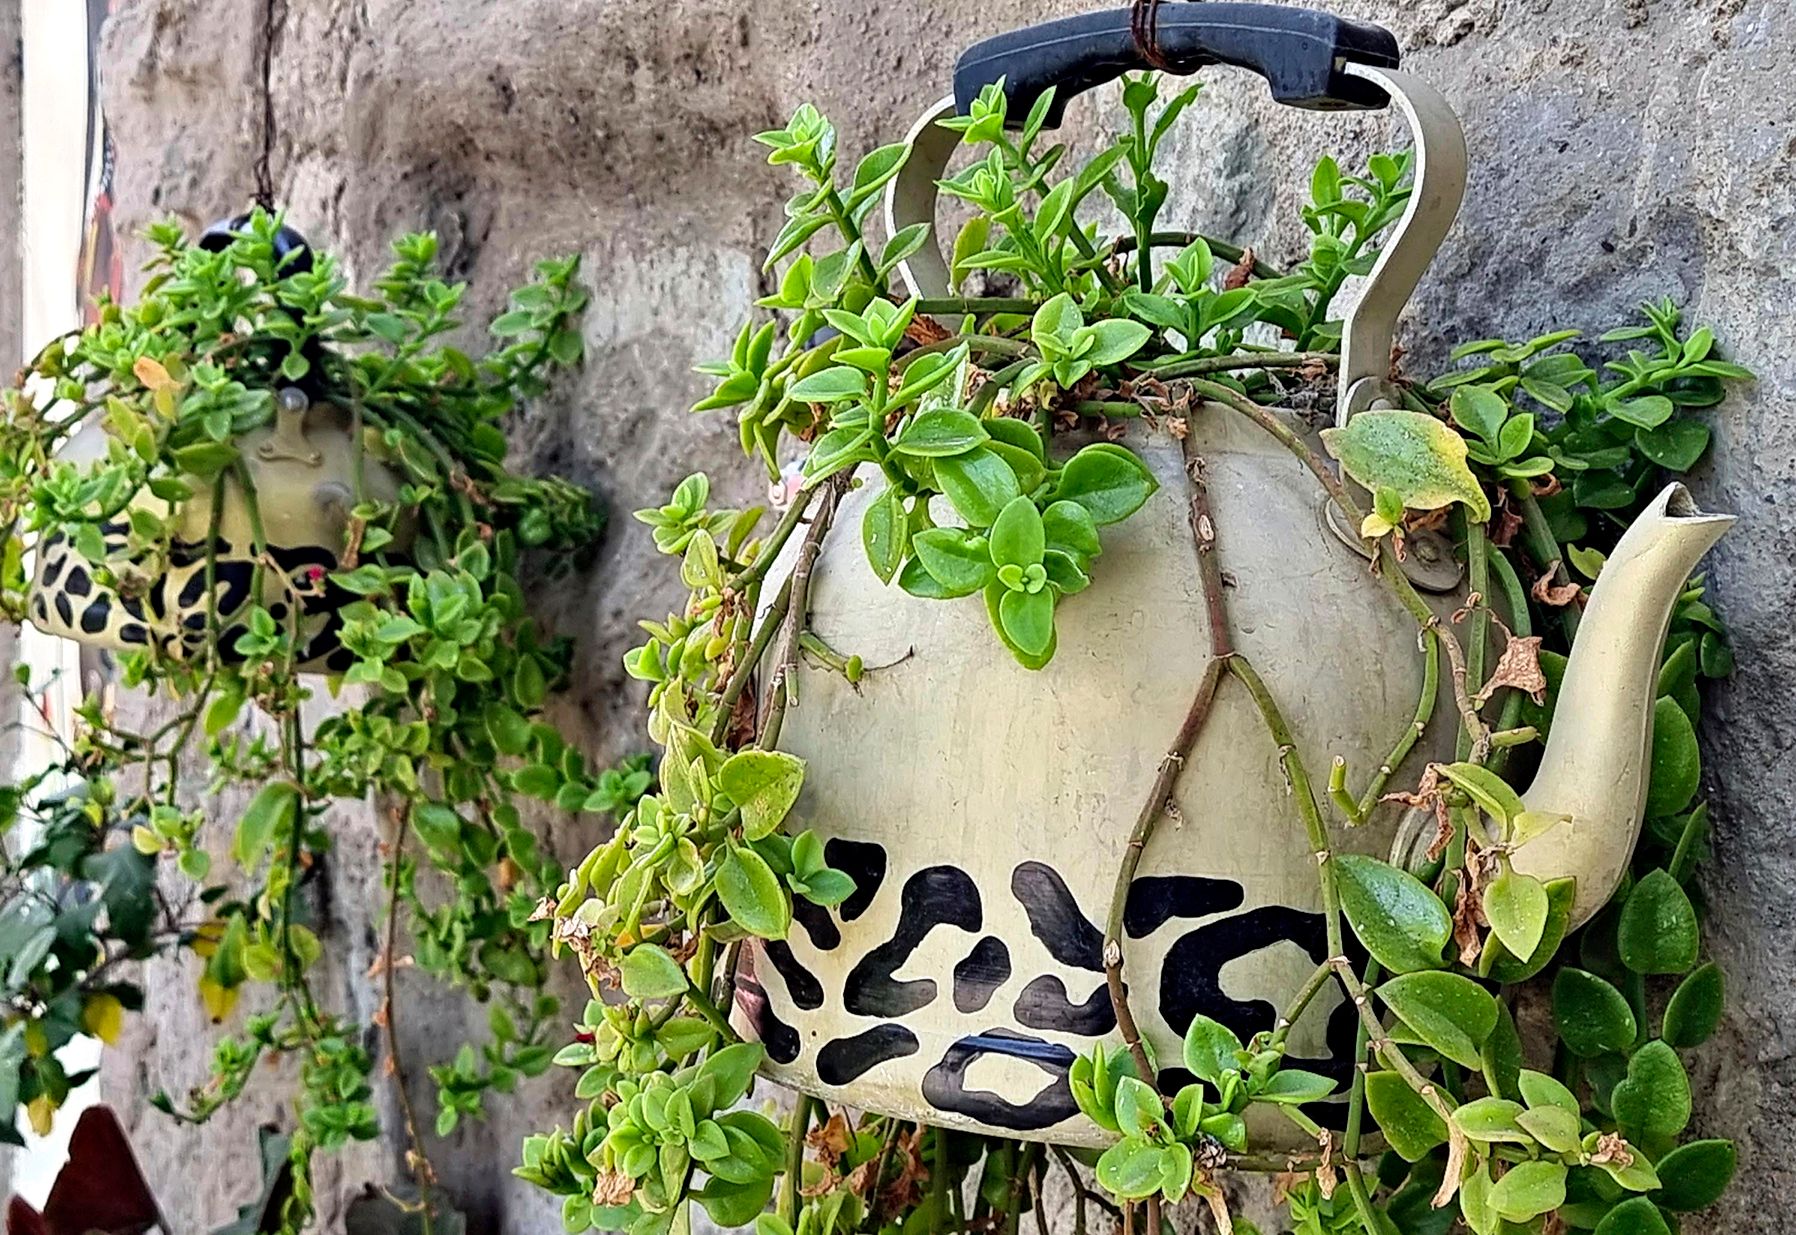 Sari rakastaa kierrätystä. Vanha teepannu on saanut kylkeensä leopardin pilkkuja ja uuden elämän kukkaruukkuna. © Päivi Arvonen